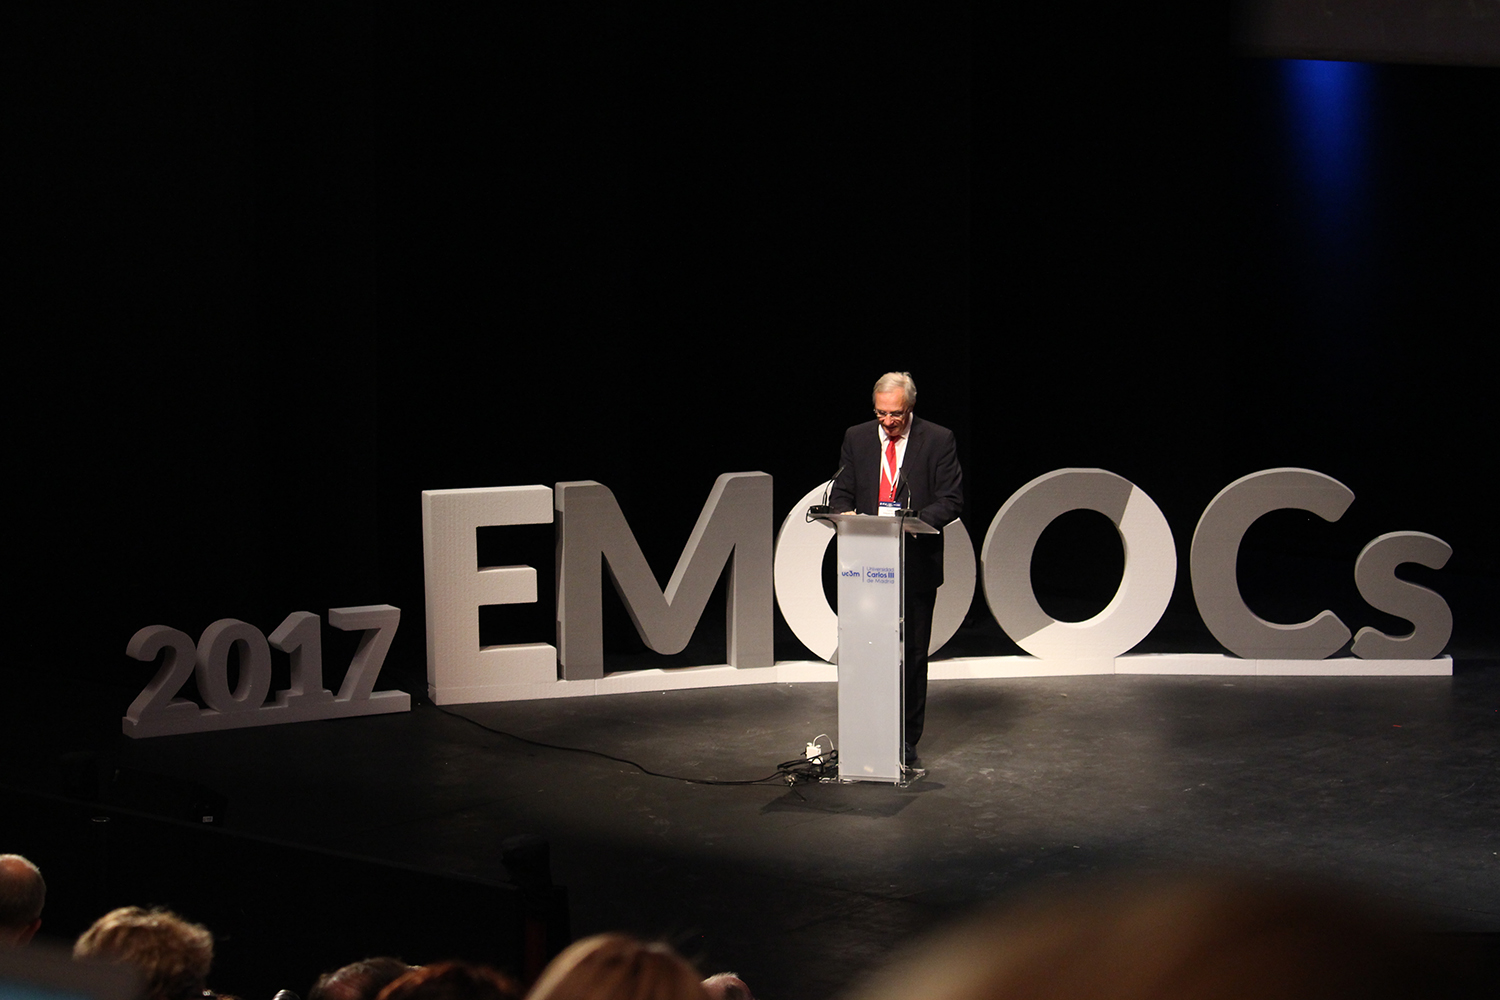 eMOOCs 2017 conferencias en inglés